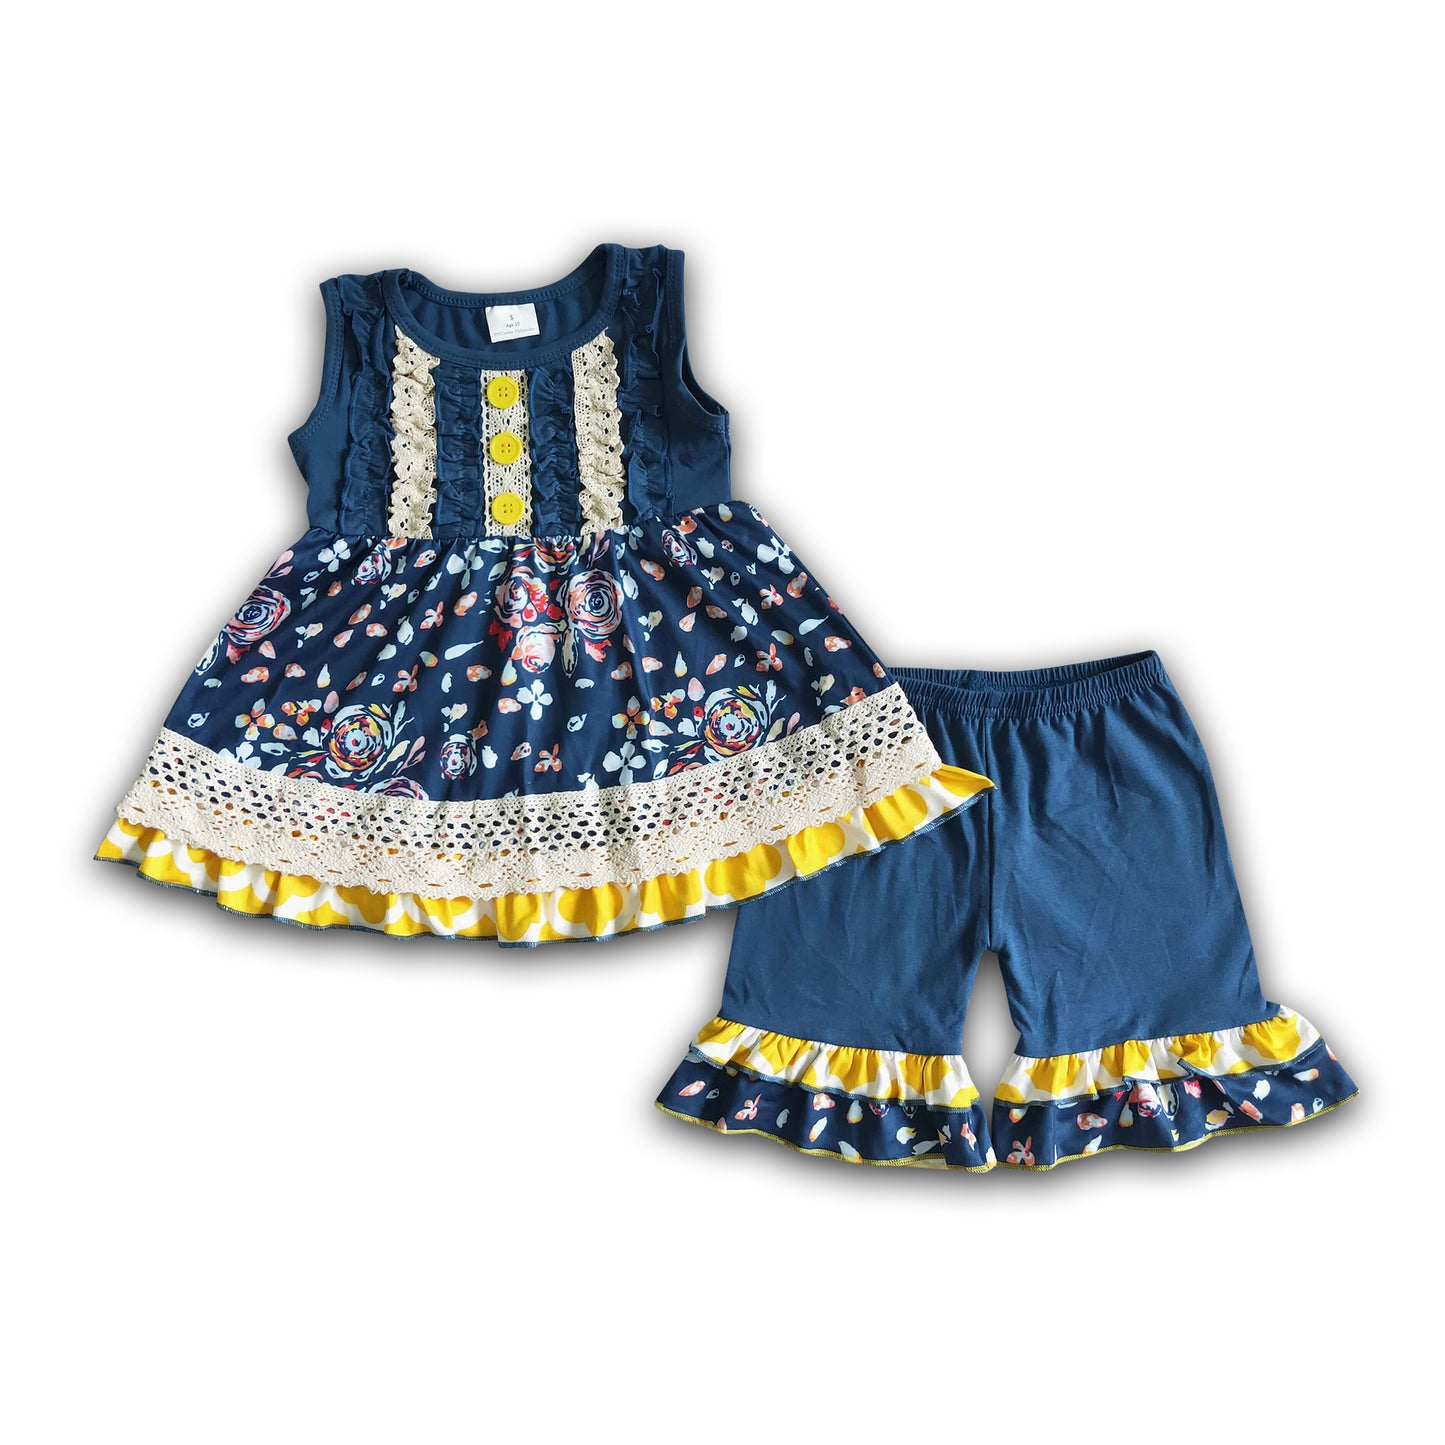 Navy floral sleeveless tunic ruffle shorts boutique girls clothing